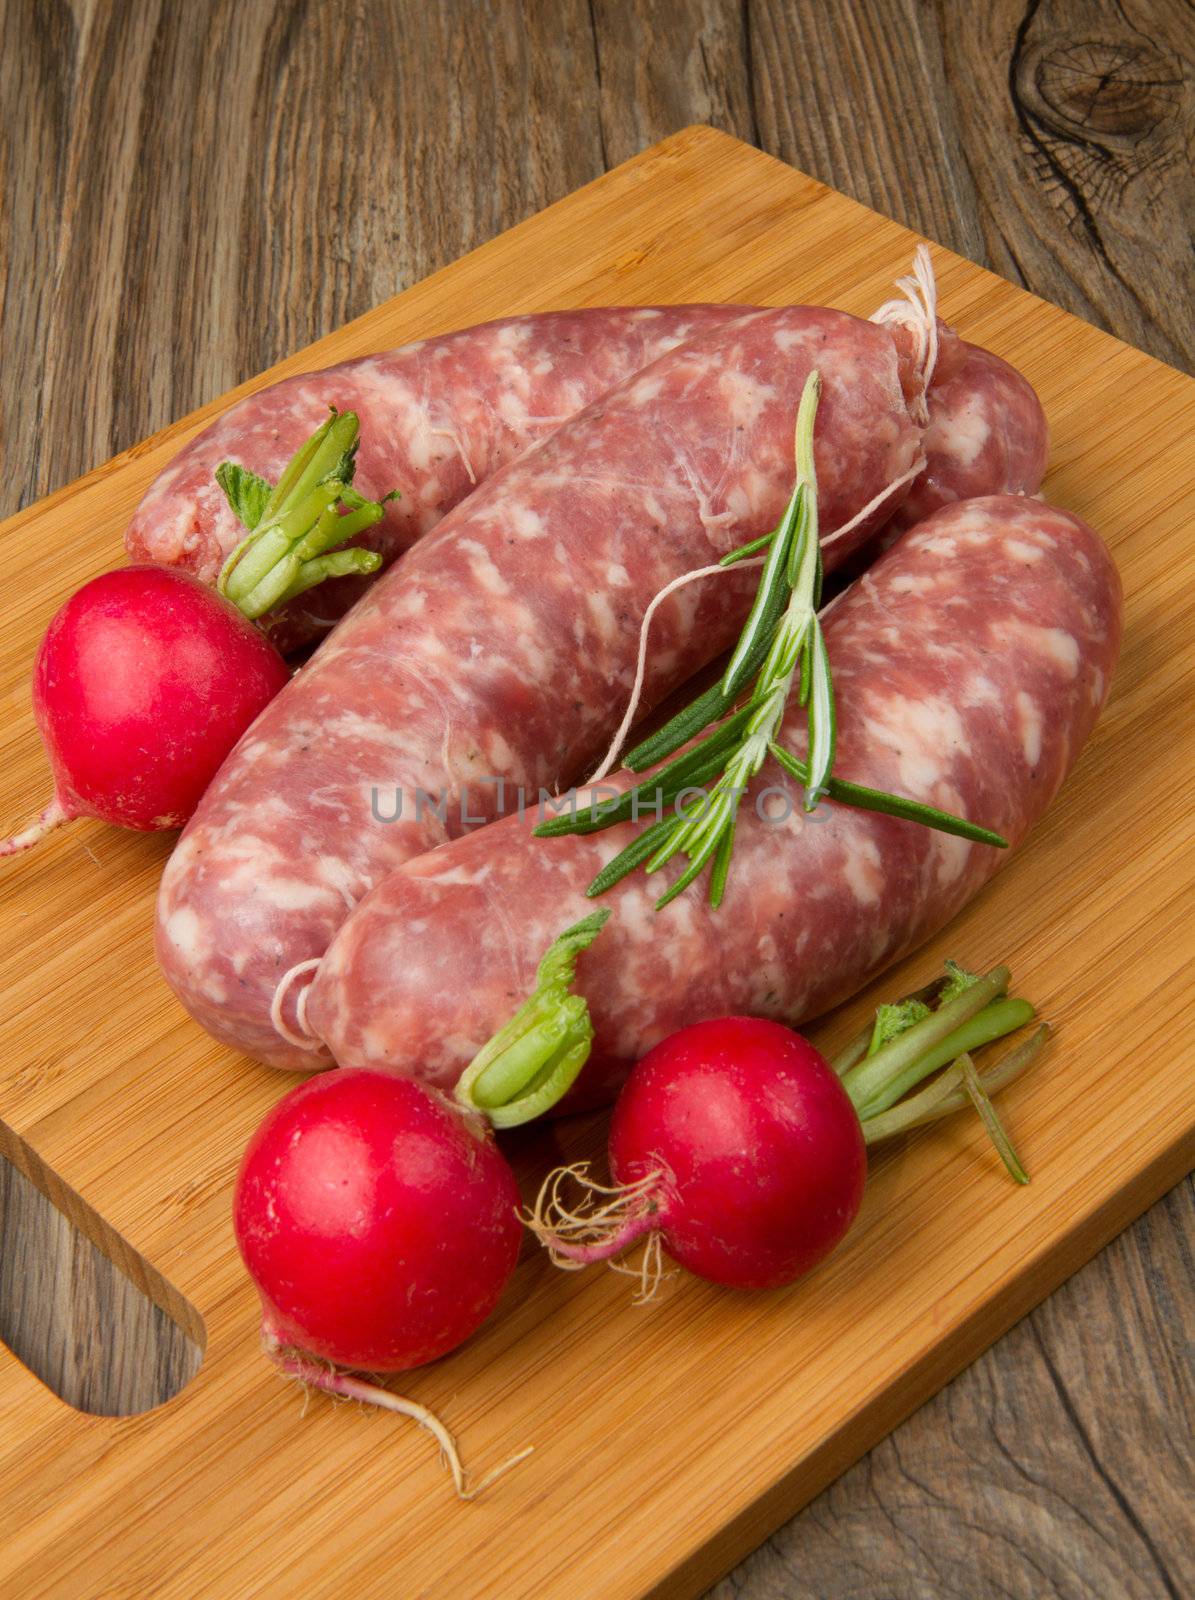 a fresh sausage